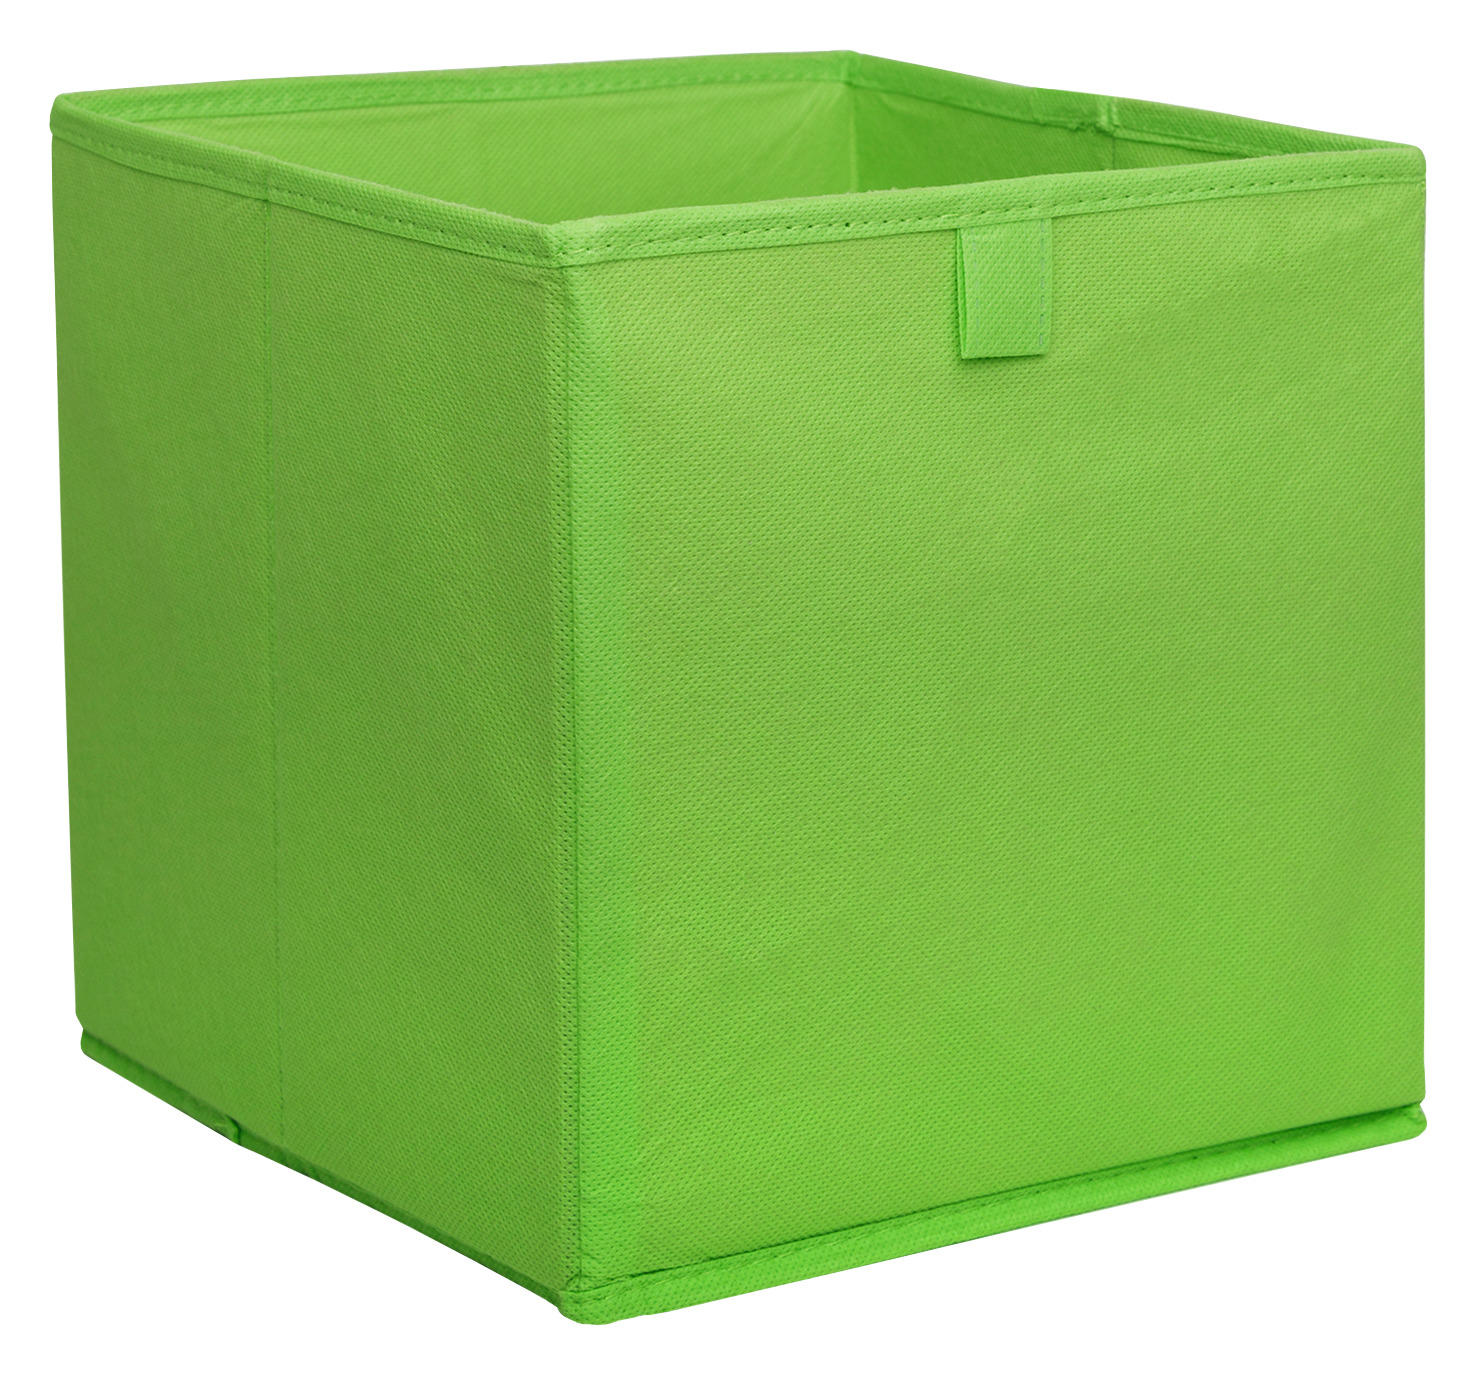 Stoffbox Grün B/h/t: Ca. 24x24x24 Cm Stoffbox_2 - grün (24,00/24,00/24,00cm)